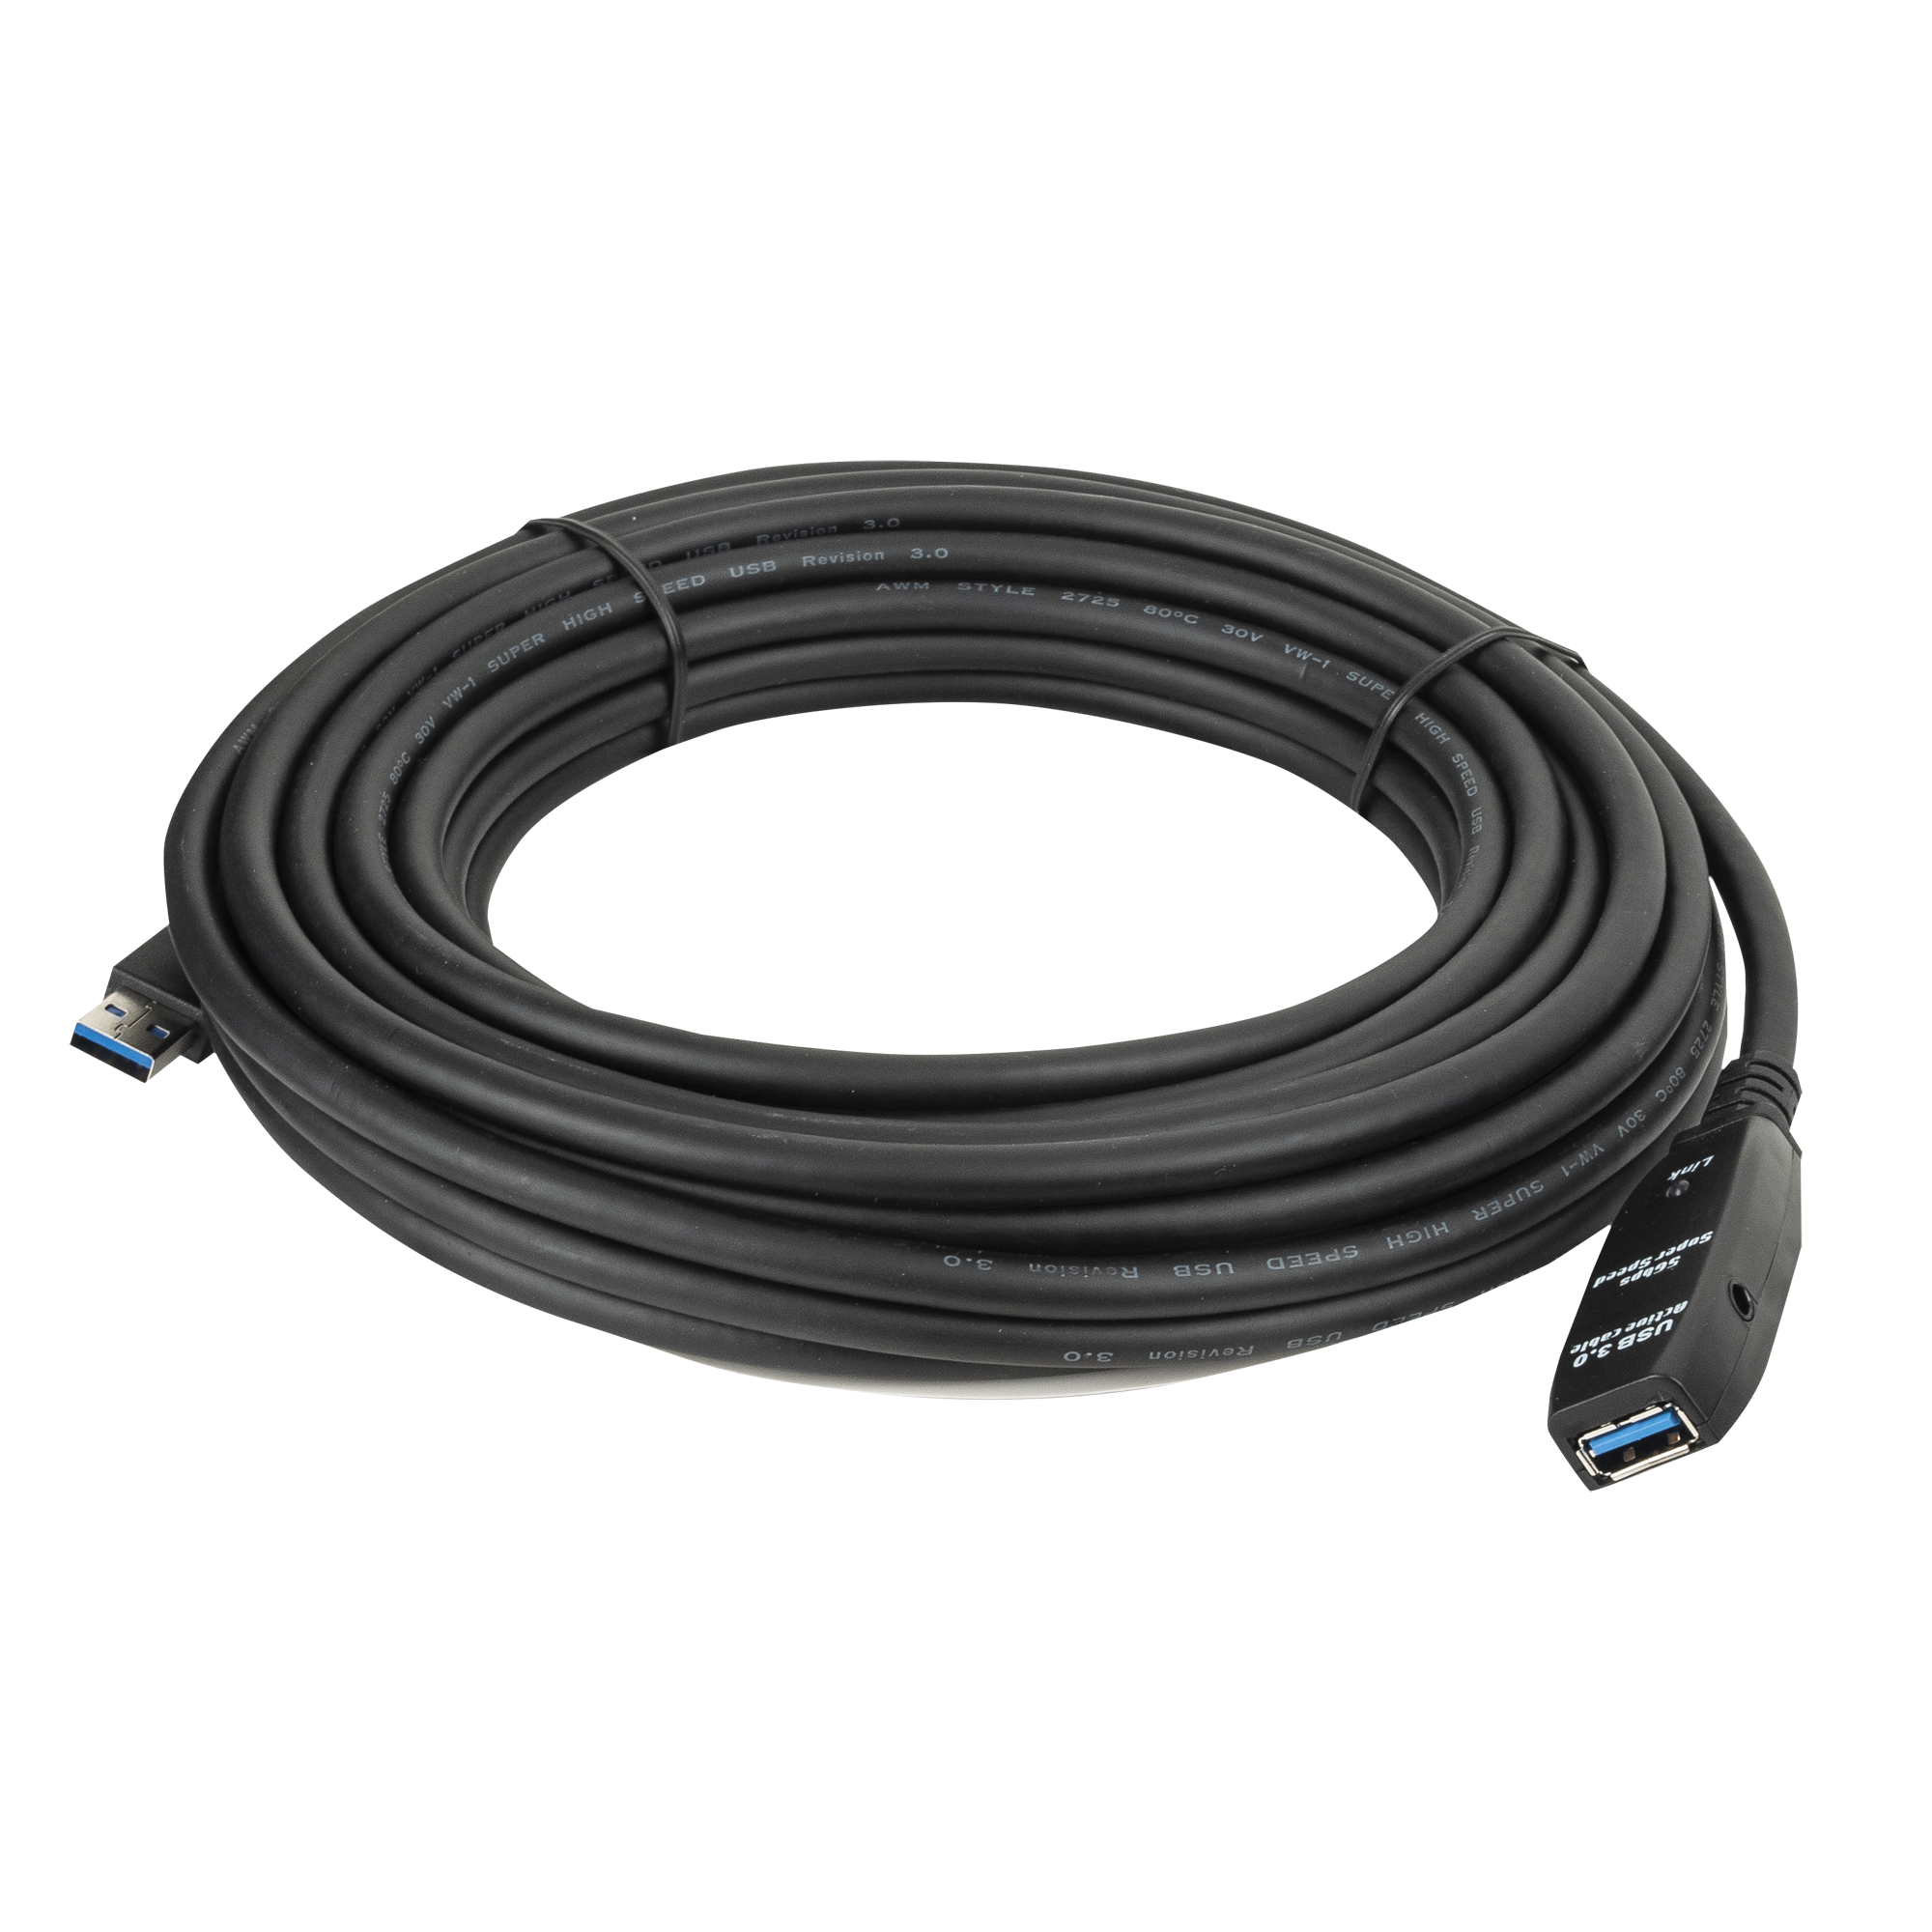 DAP USB 3.0 Active Extension Cable black, male - female 20 m - schwarz - männlich - weiblich